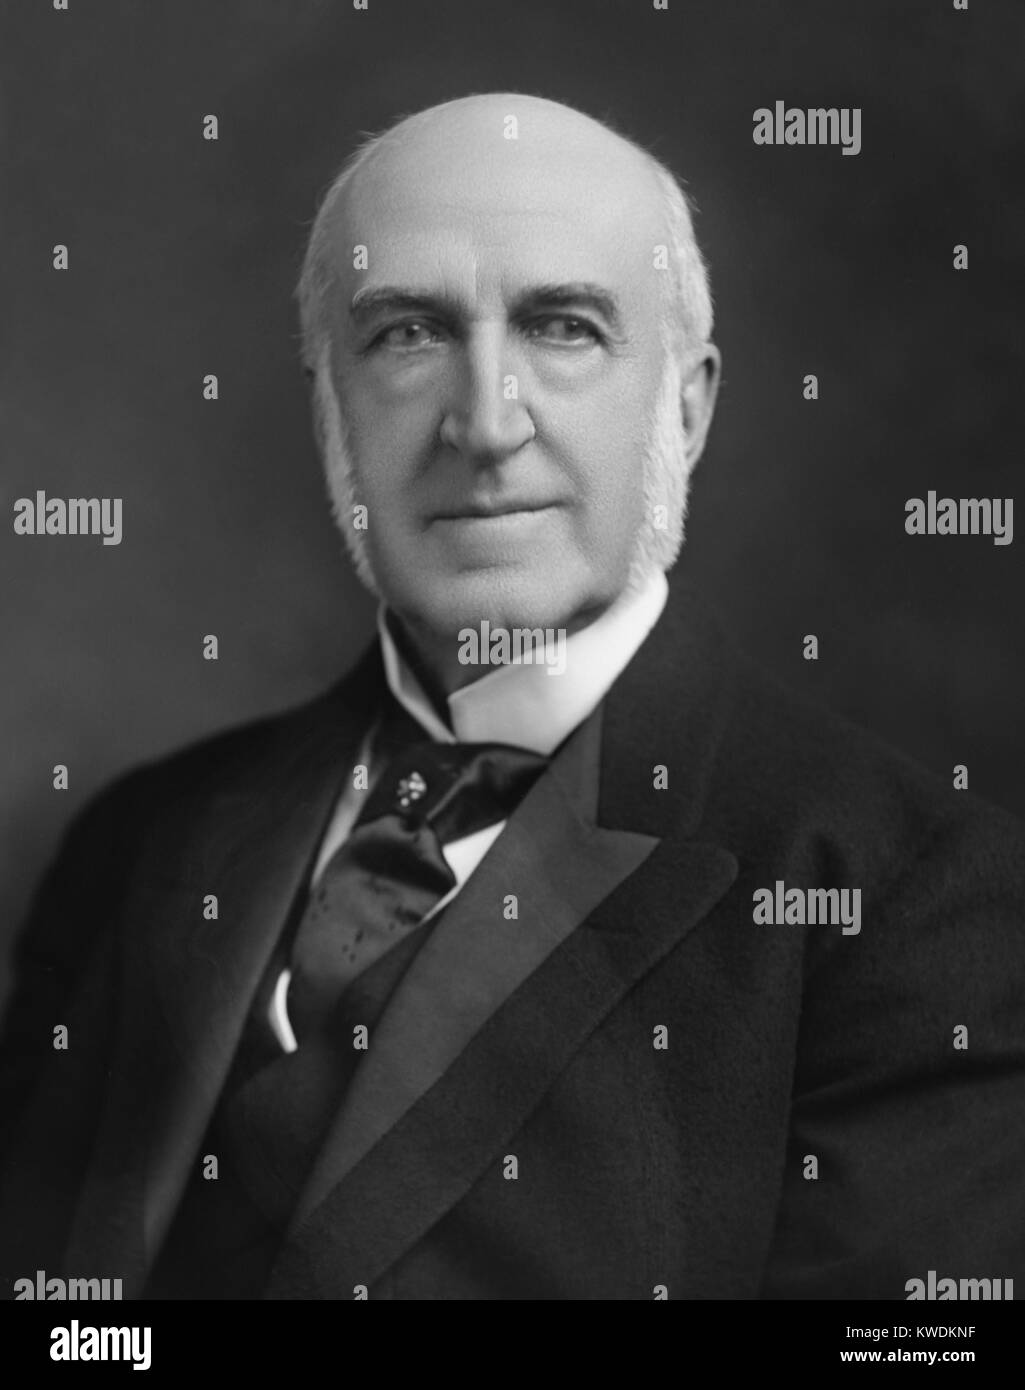 Chauncey Depew, sénateur républicain de New York à partir de 1899-1911. Avant qu'il était un sénateur conservateur, il était un avocat d'entreprise pour le New York Central Railroad qui a siégé à plusieurs conseils d'administration de fer (BSLOC 2017 8 85) Banque D'Images